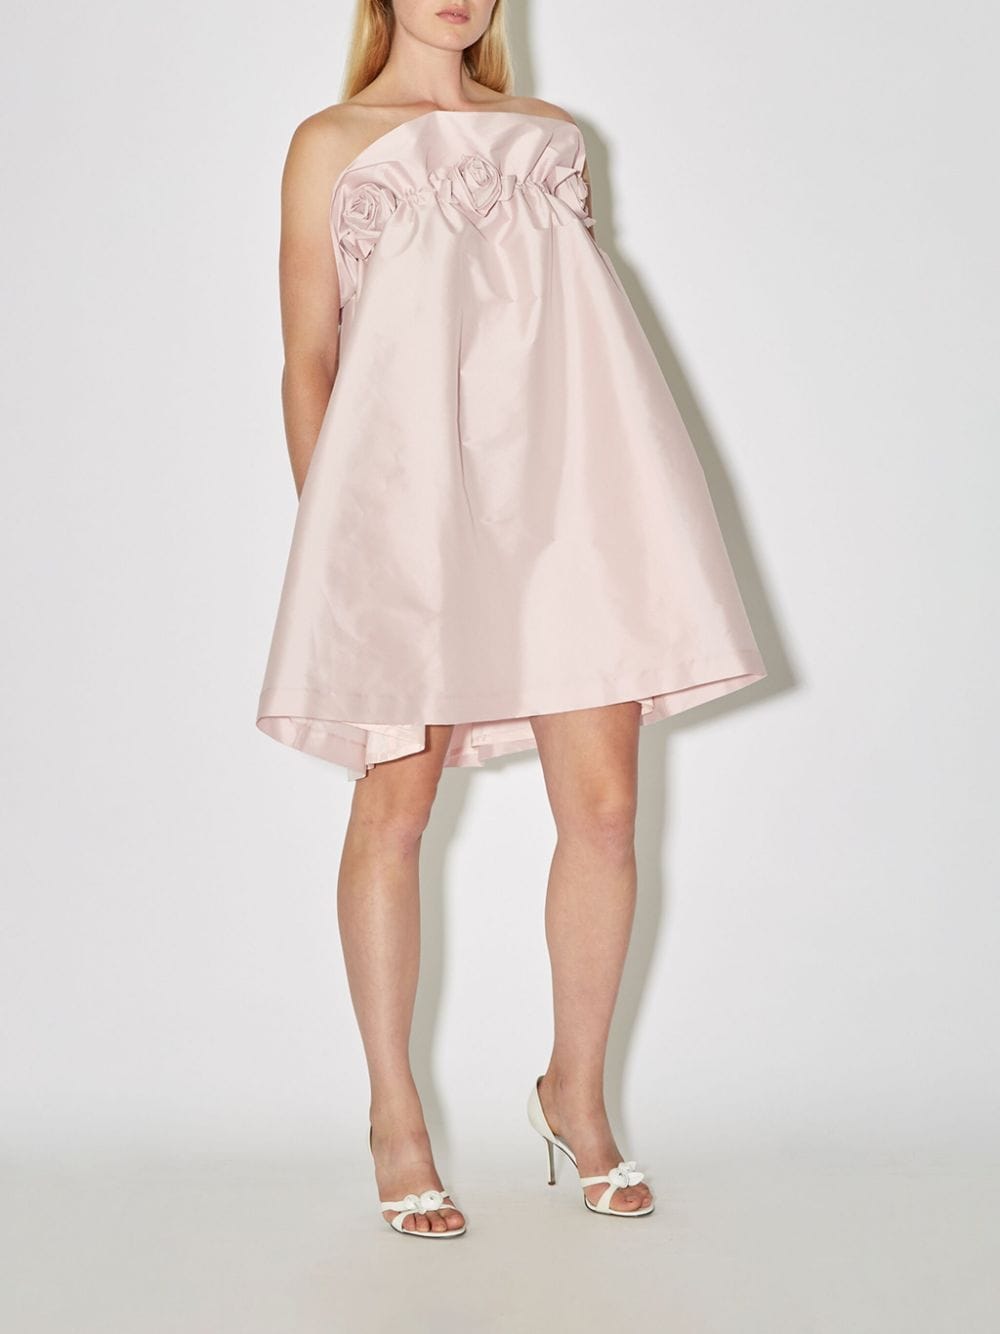 Bernadette Theodore strapless jurk met bloemapplicatie - Roze